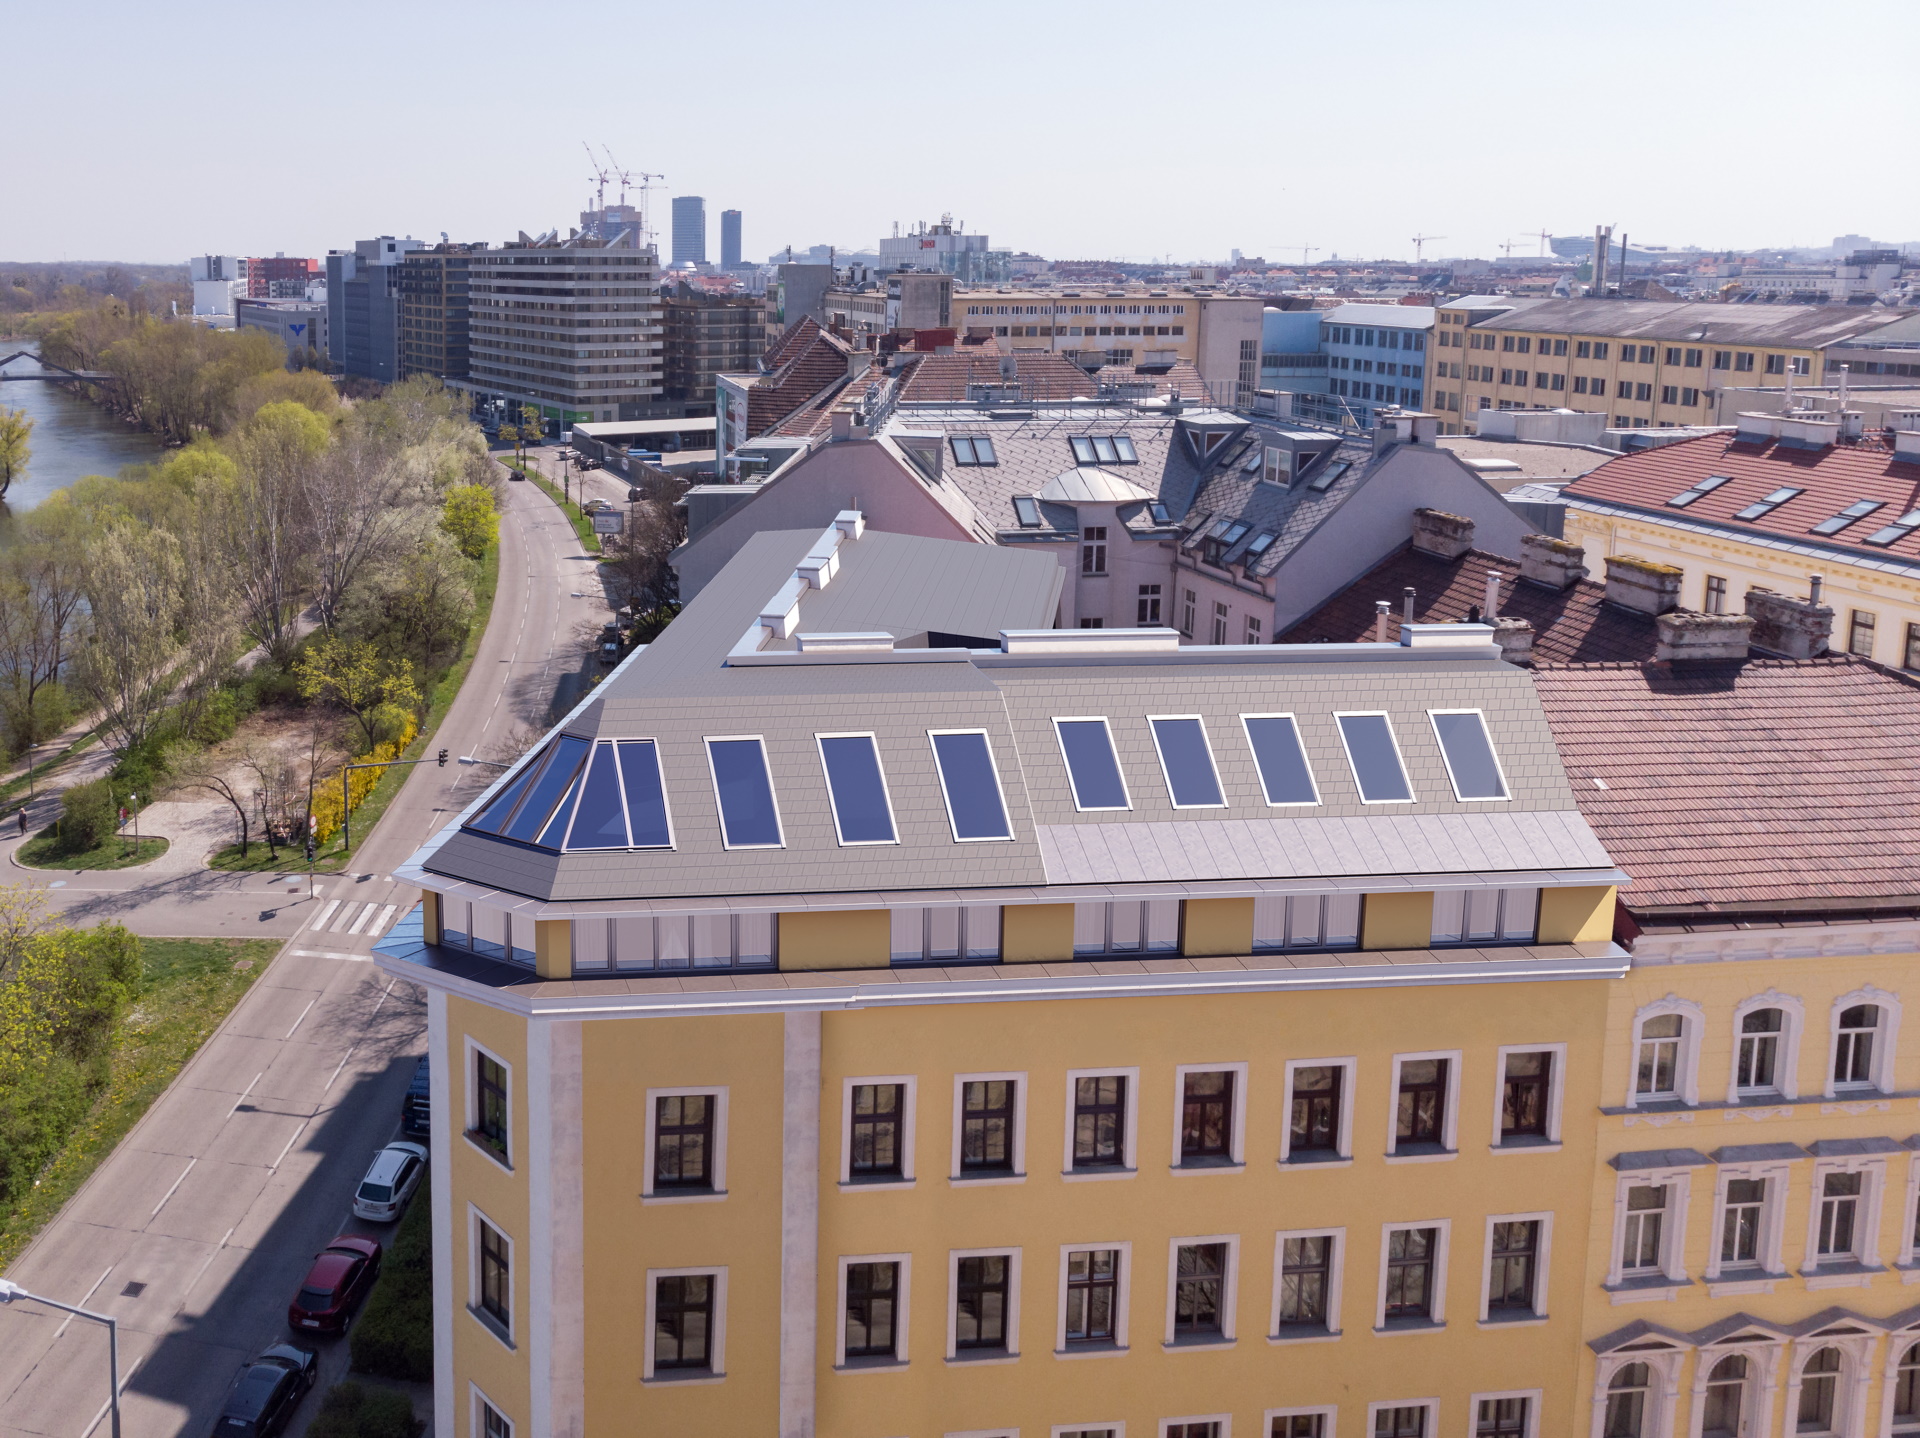 Neubau Dachgeschoß, 5 freifinanzierte Eigentumswohnungen, Fertigstellung 2020